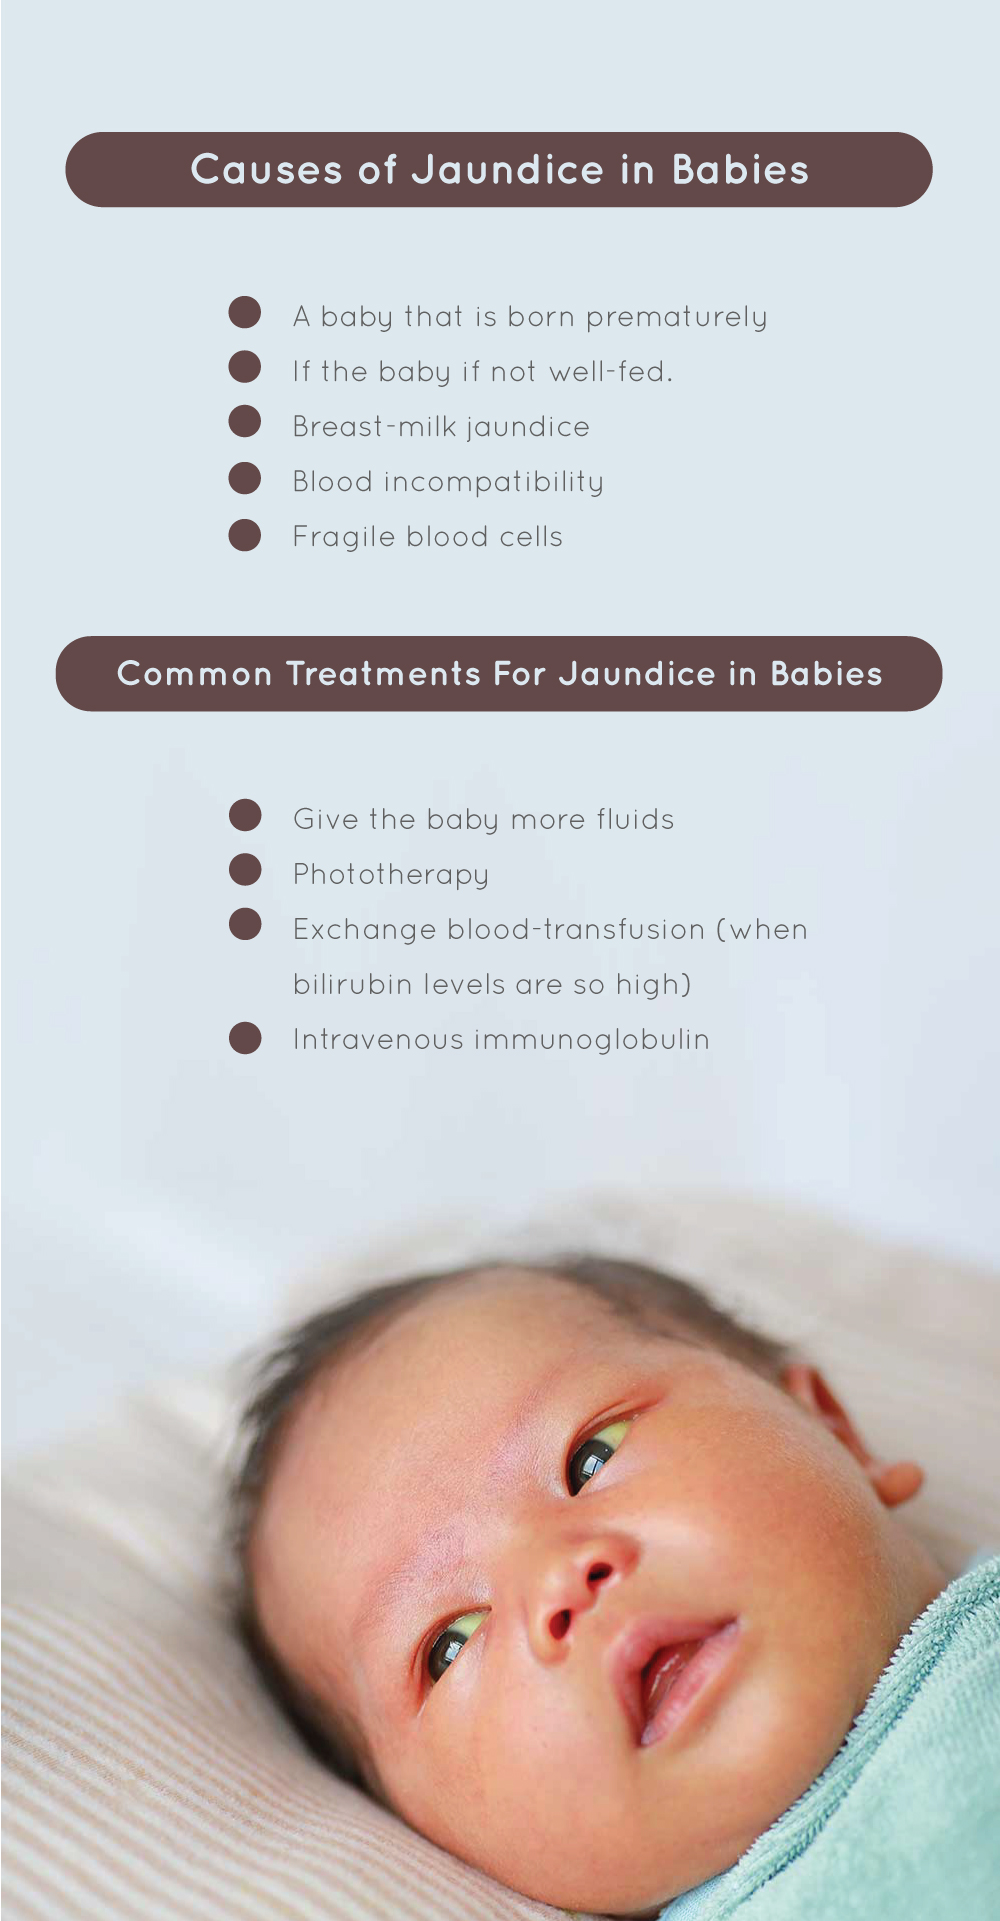 How To Treat Jaundice in babies